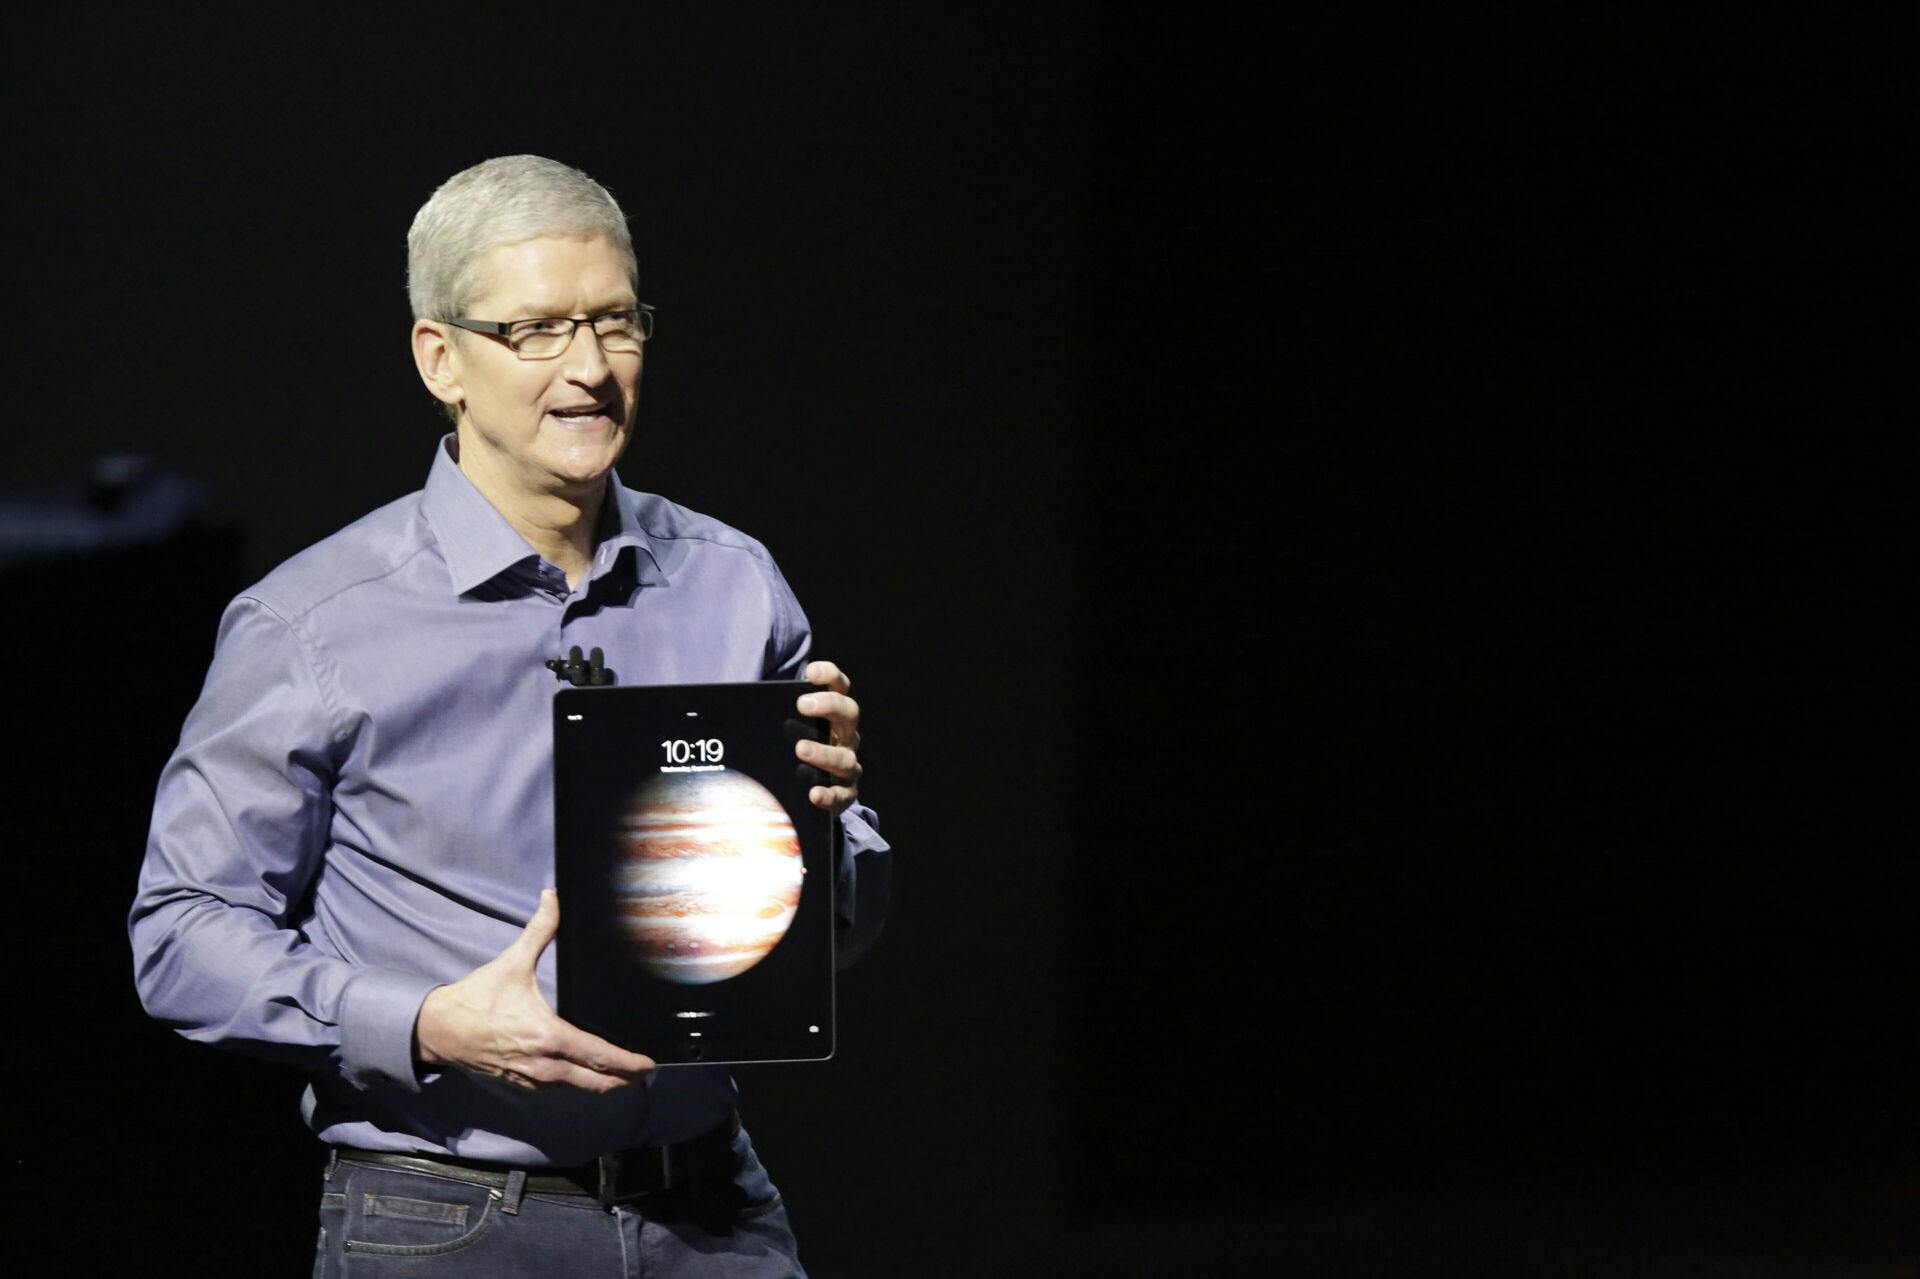 Mens Apples topchef Tim Cook kæmper for at sælge flere iPhones, får han i dag muligheden for en ny pengestrøm, hvis ellers brugerne er klar til at betale dyrt for en ny iPad.